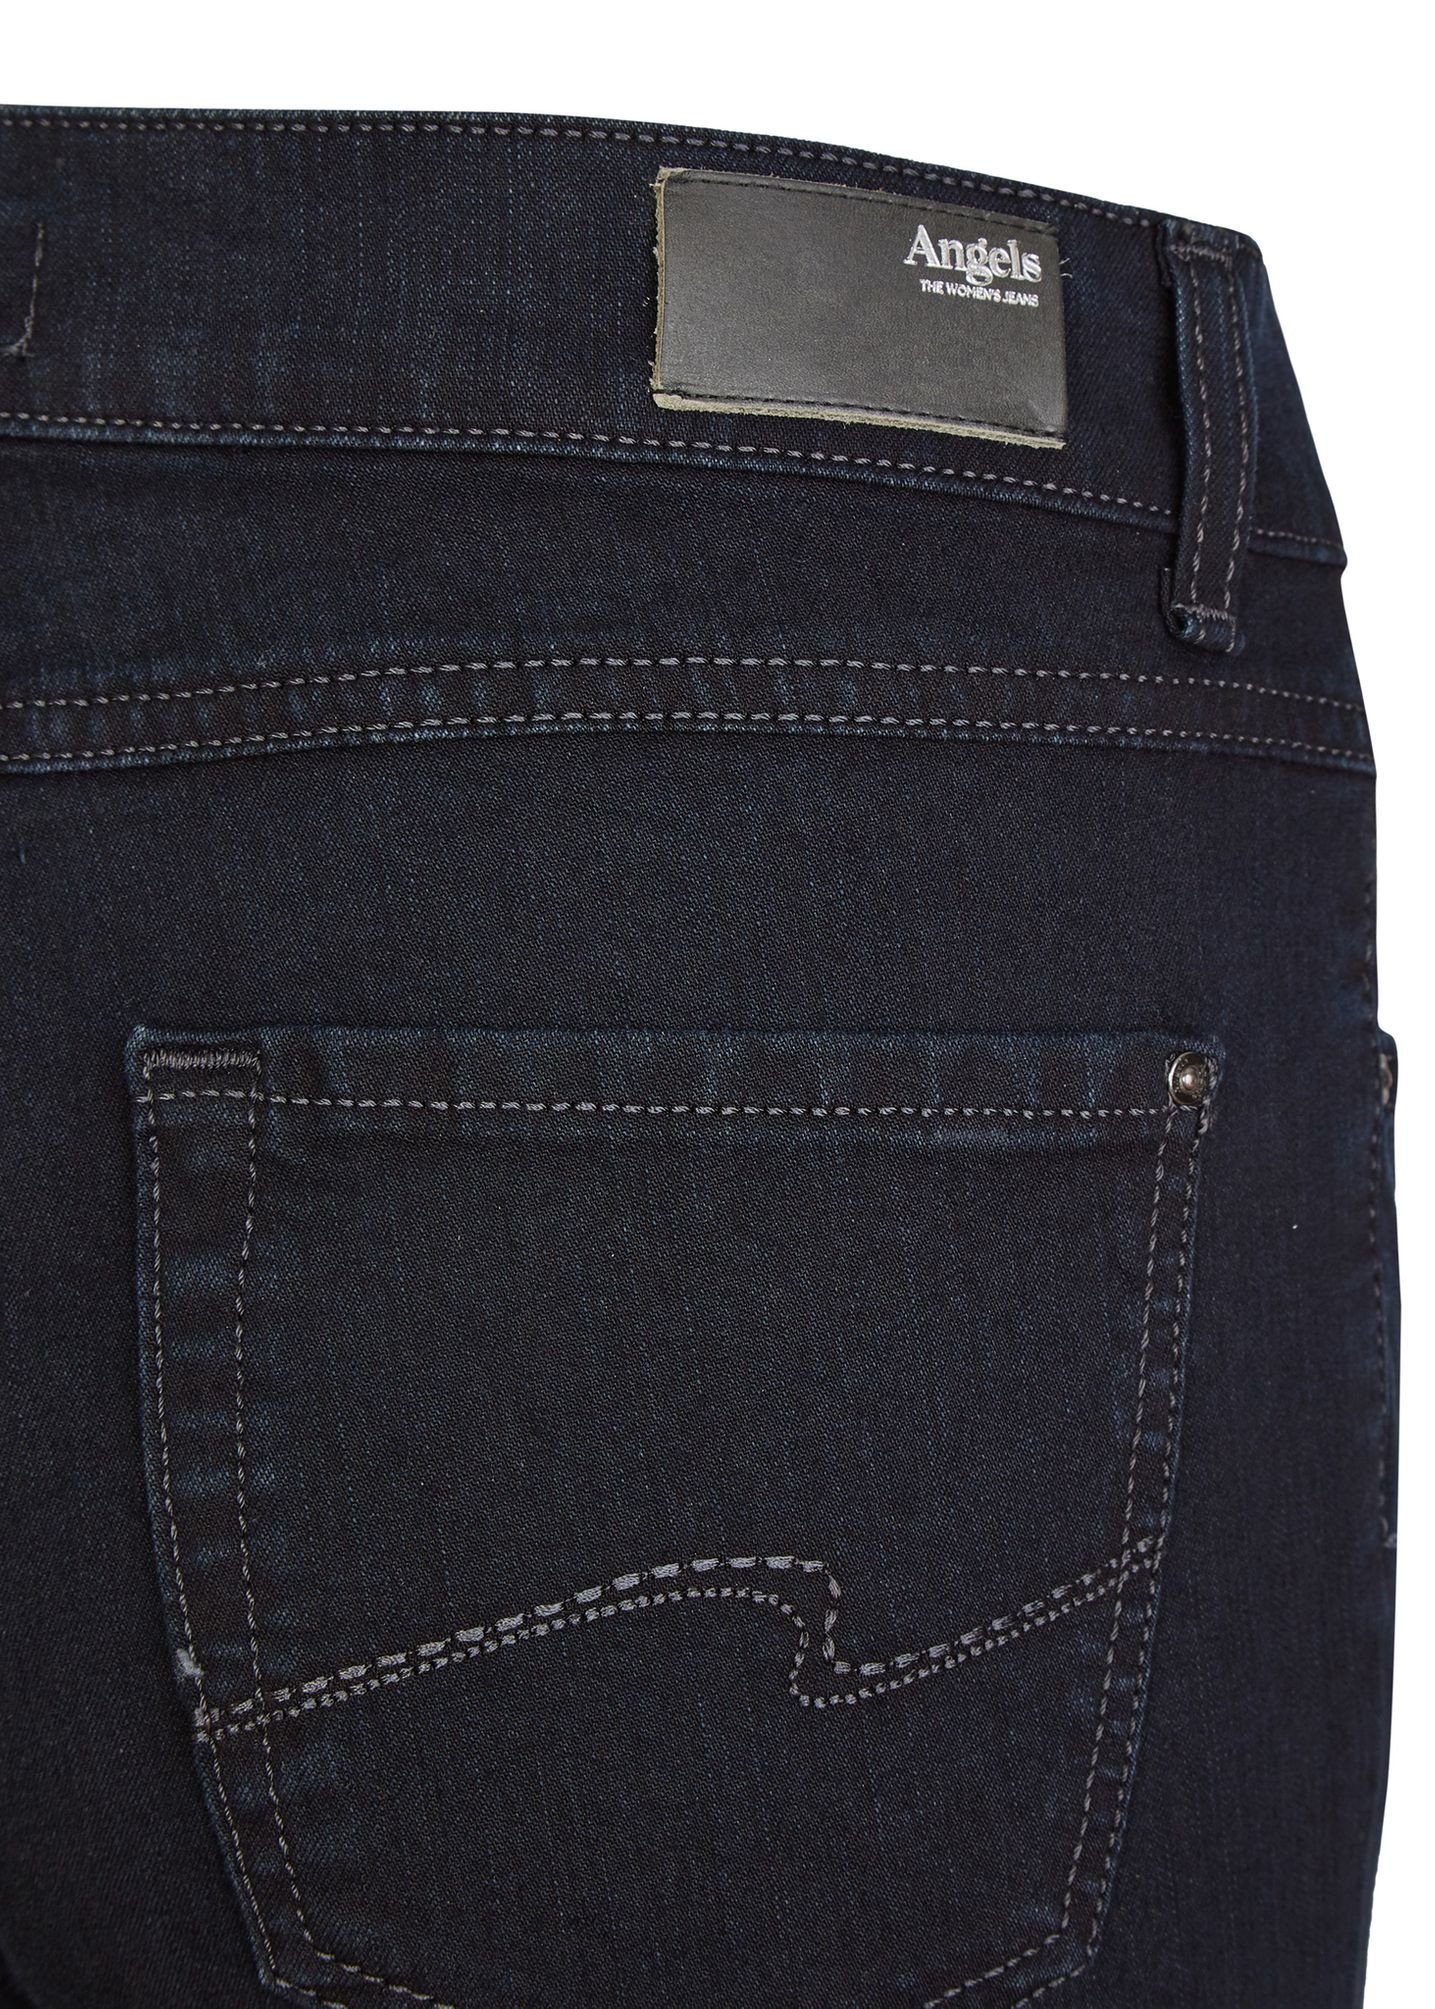 7434 ANGELS Cici Jetblack (100) 5-Pocket-Jeans